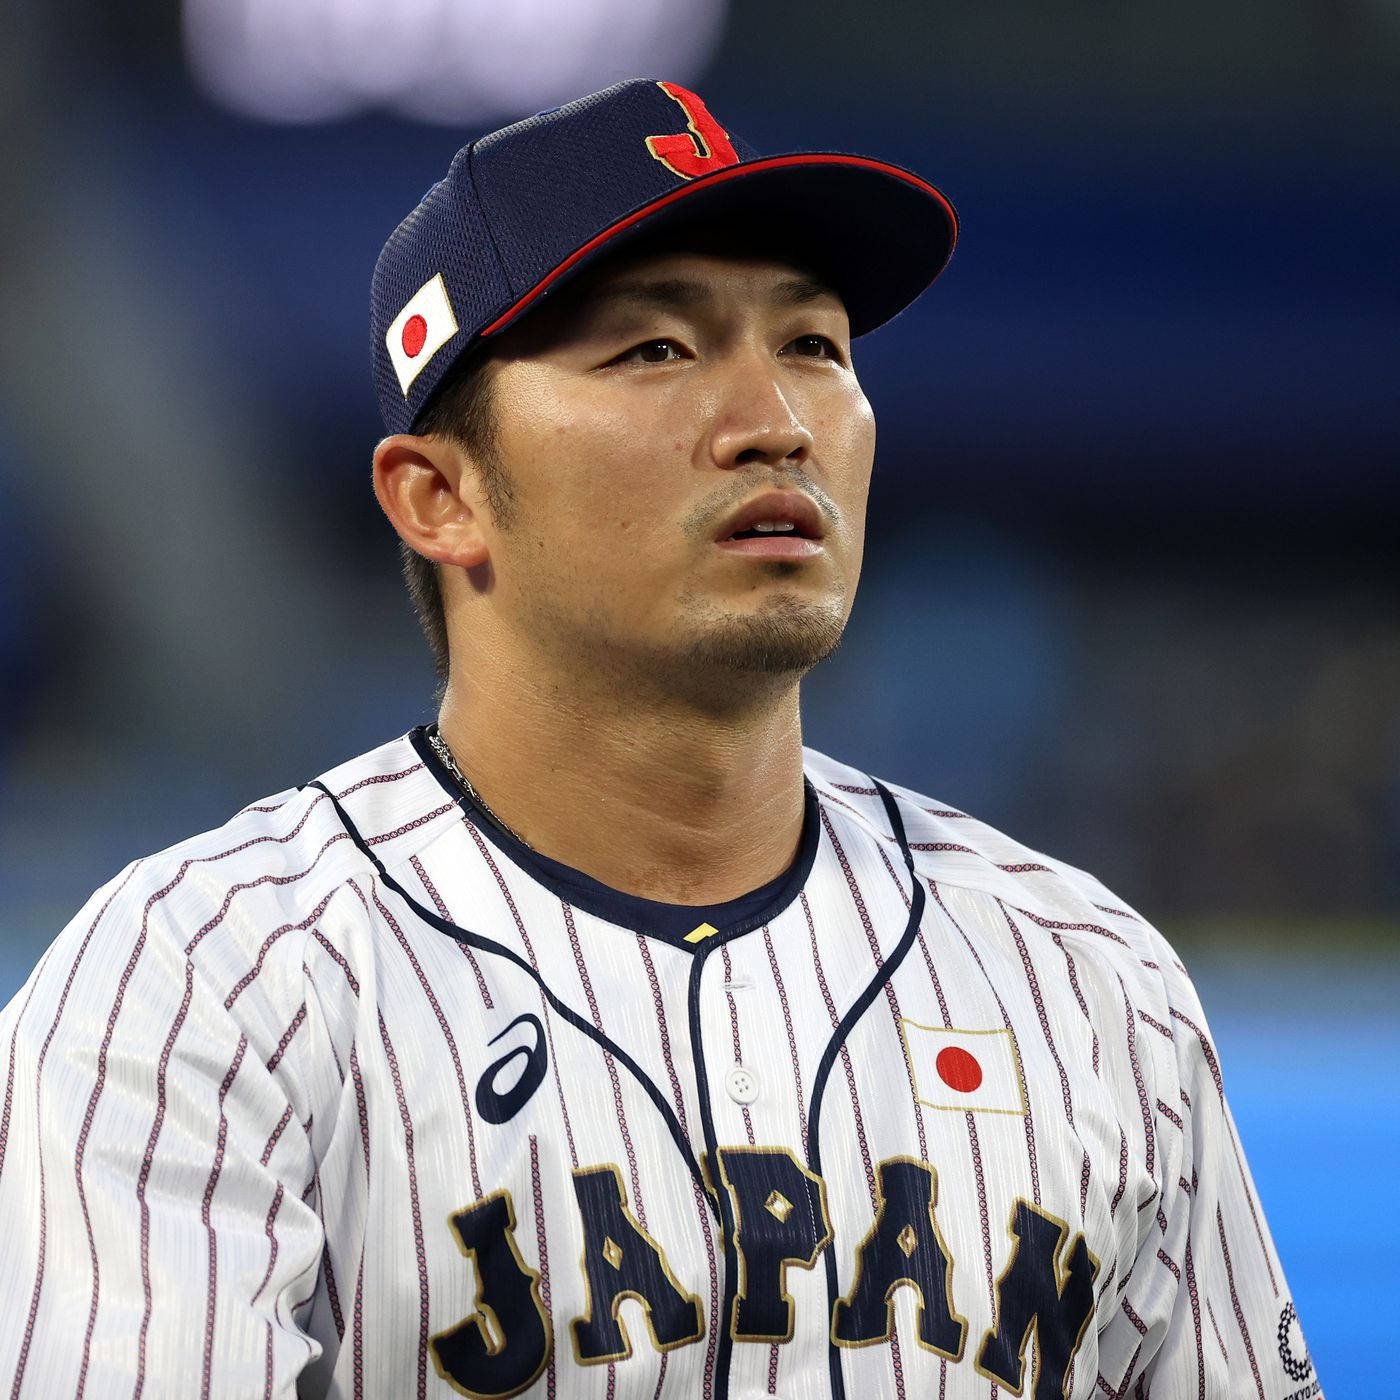 Download Caption: Seiya Suzuki - A Japanese Baseball Star